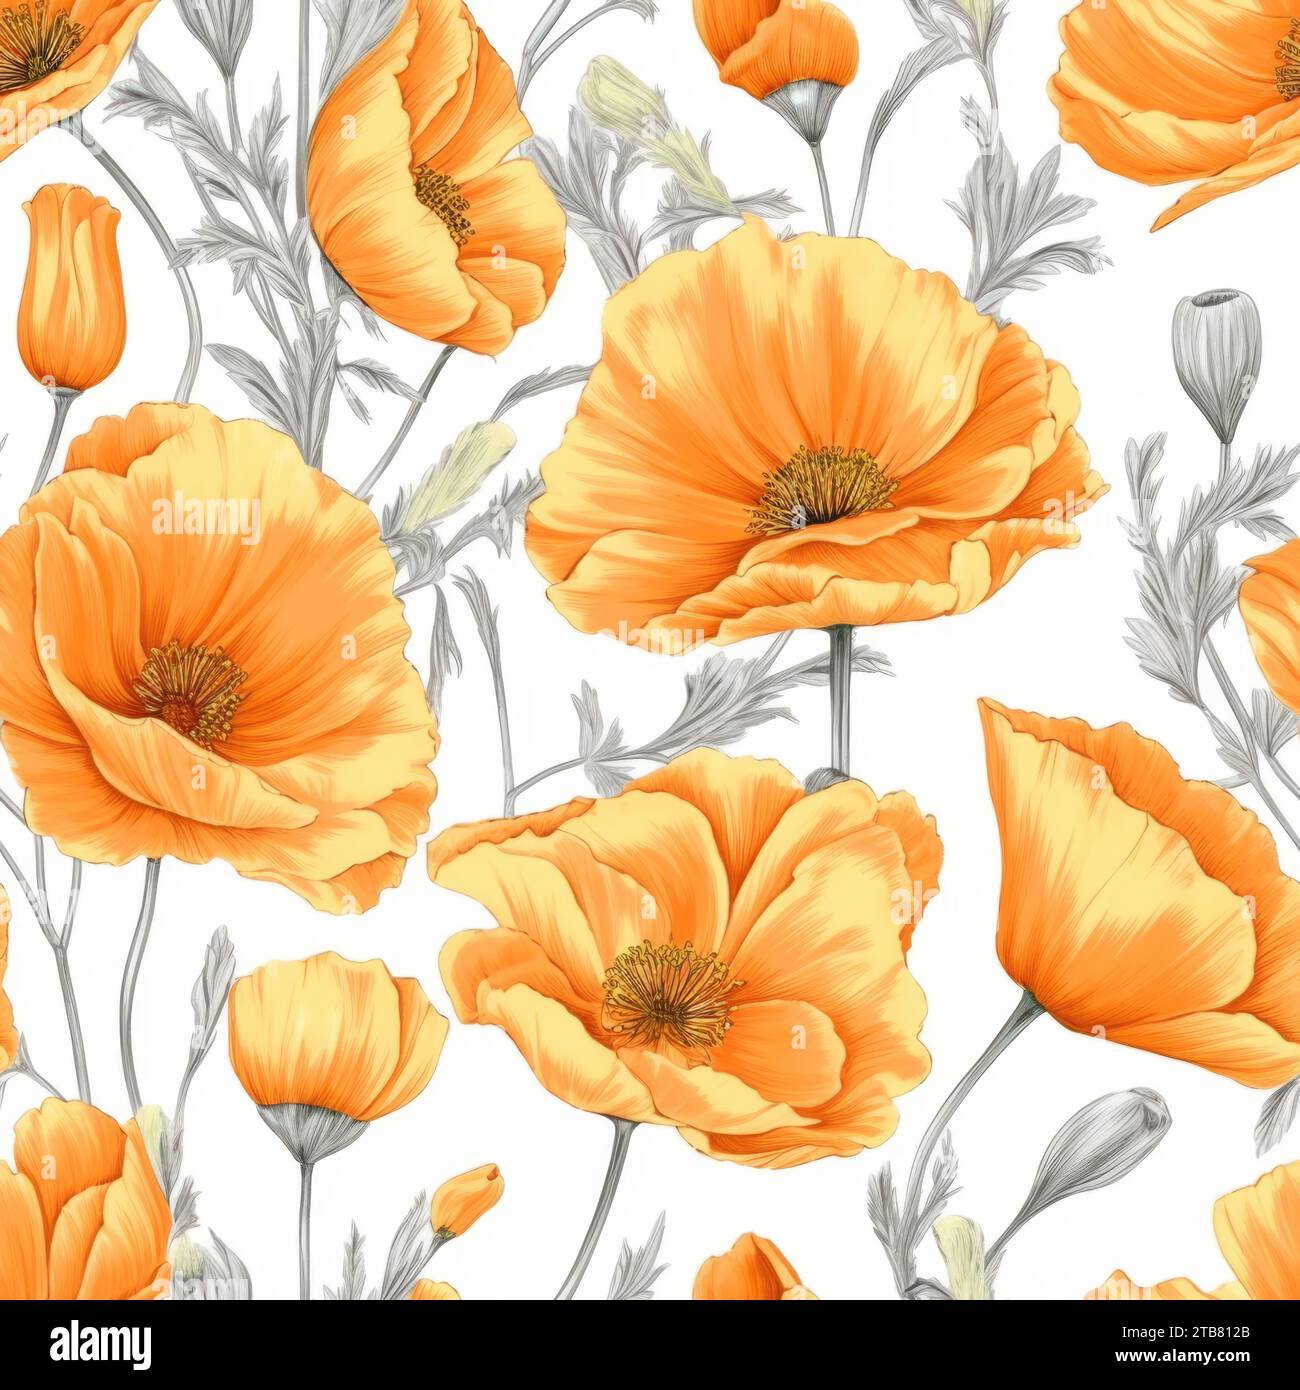 Questa immagine presenta un vivace fiore di papavero arancione su uno sfondo bianco nitido Foto Stock